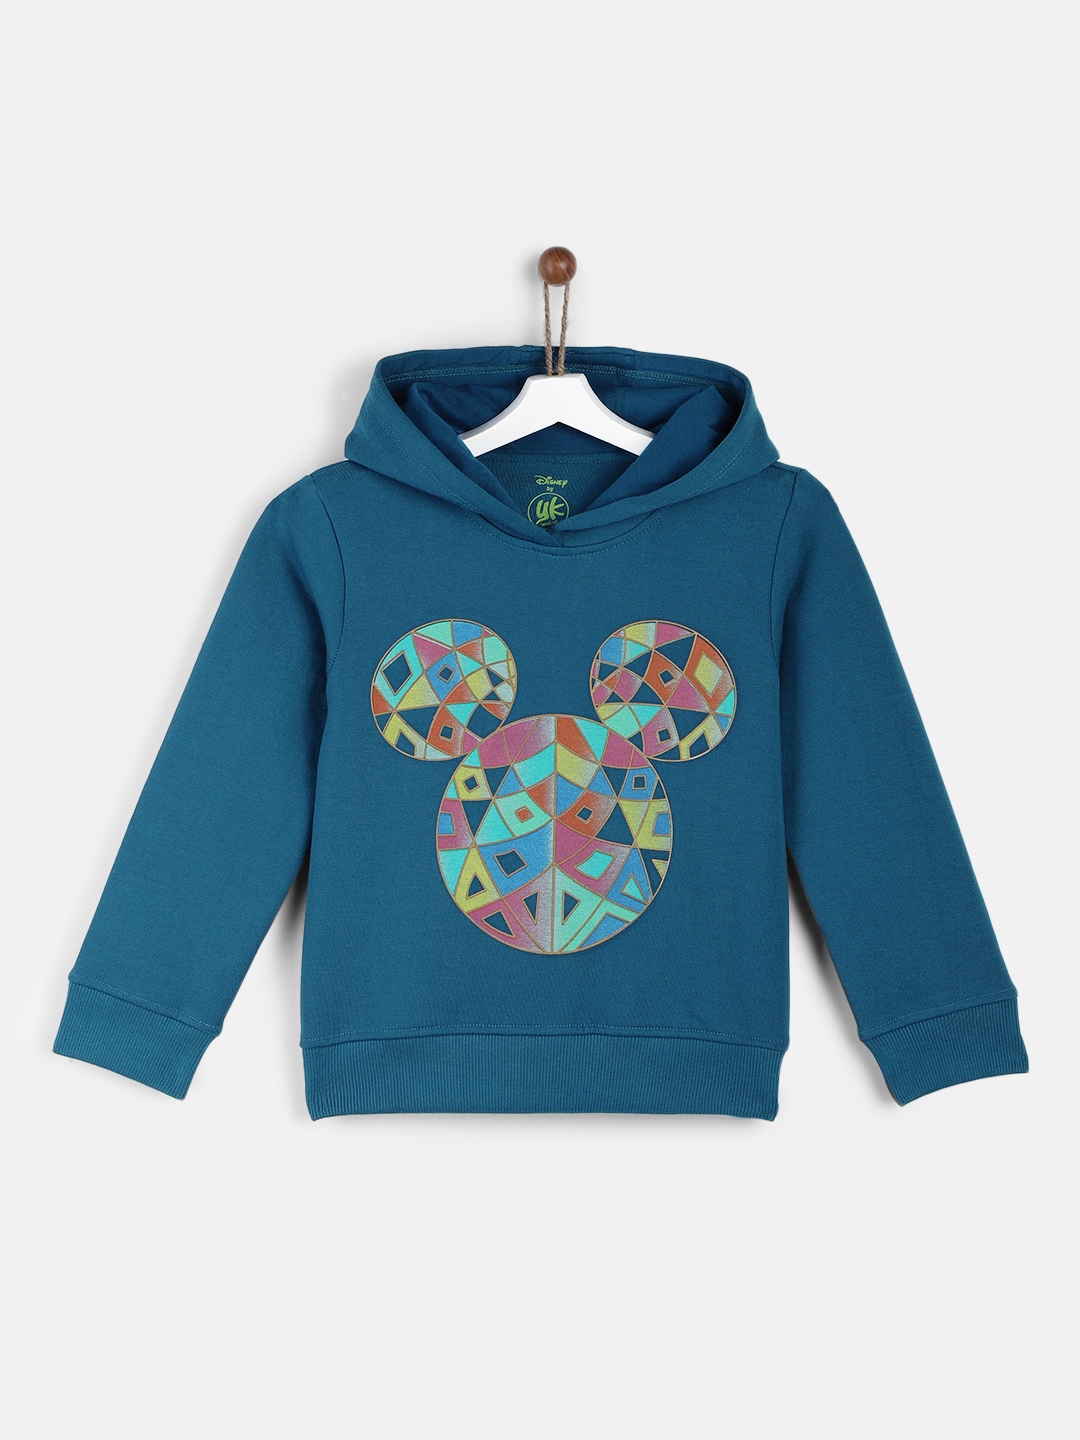 Buy YK Disney Girls Blue Mickey Printed Hooded Sweatshirt - Sweatshirts ...